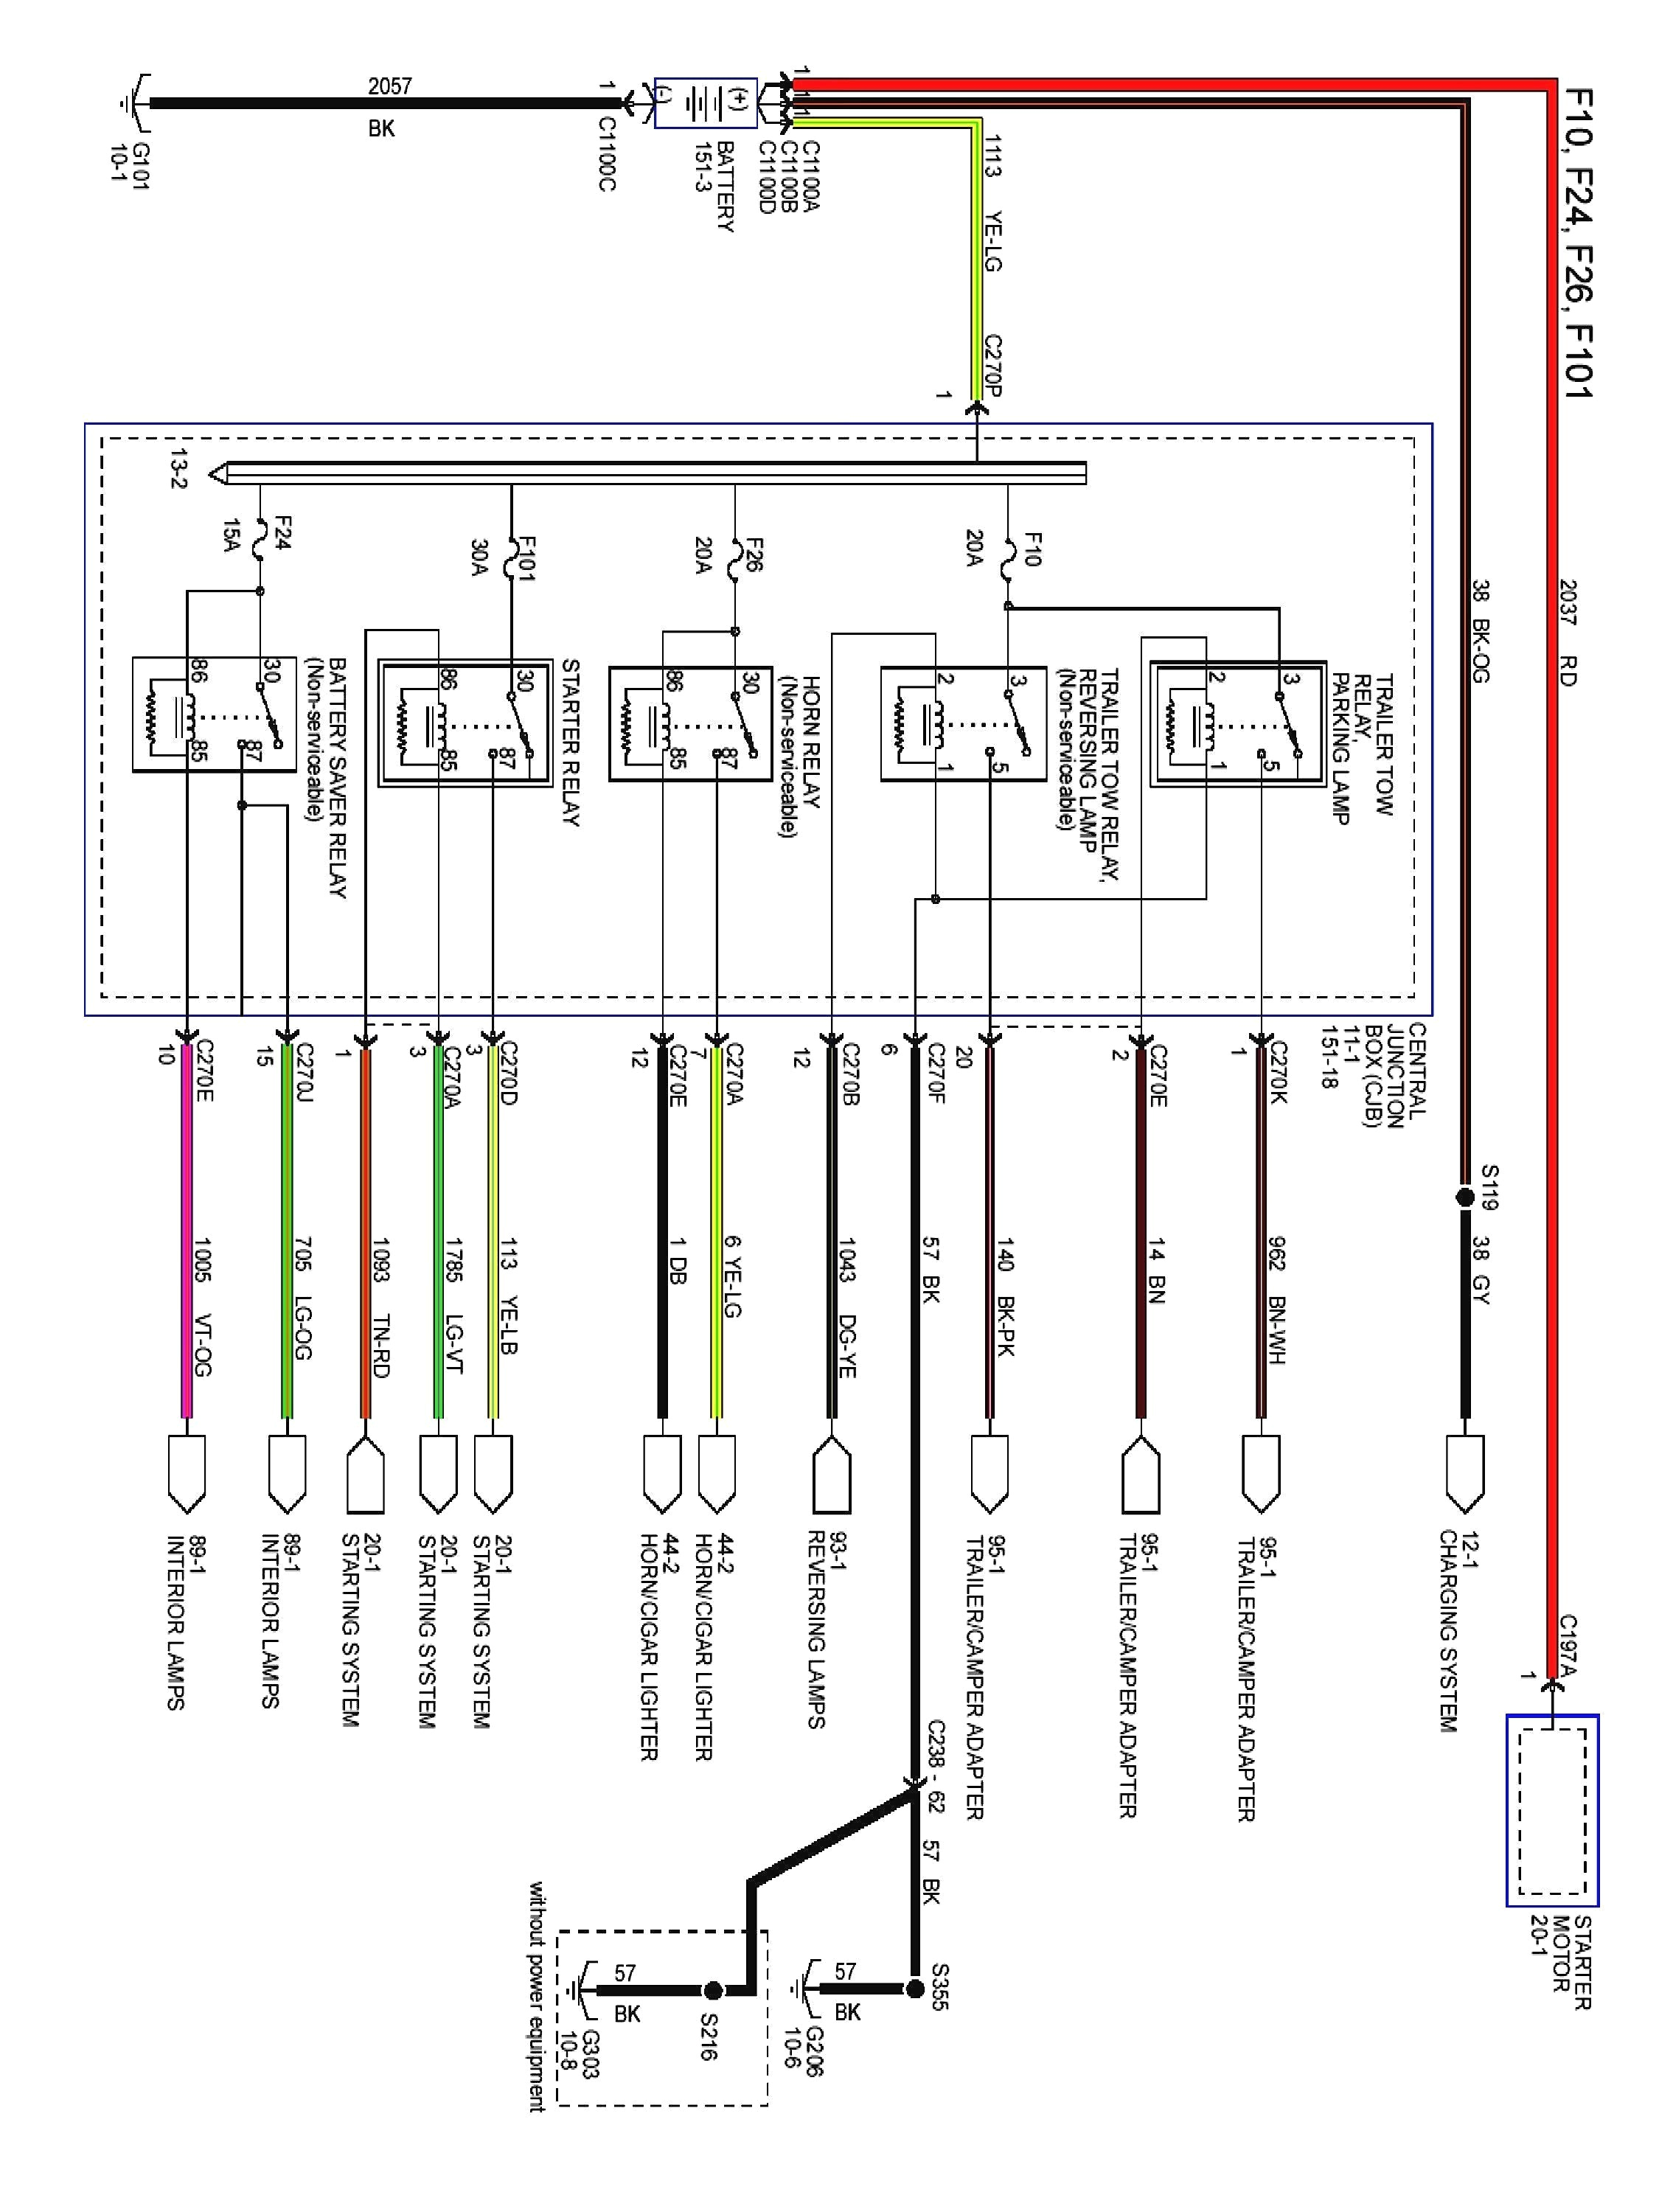 2001 audi radio wiring diagram wiring diagram name audi symphony 2 wiring diagram 2001 audi wiring